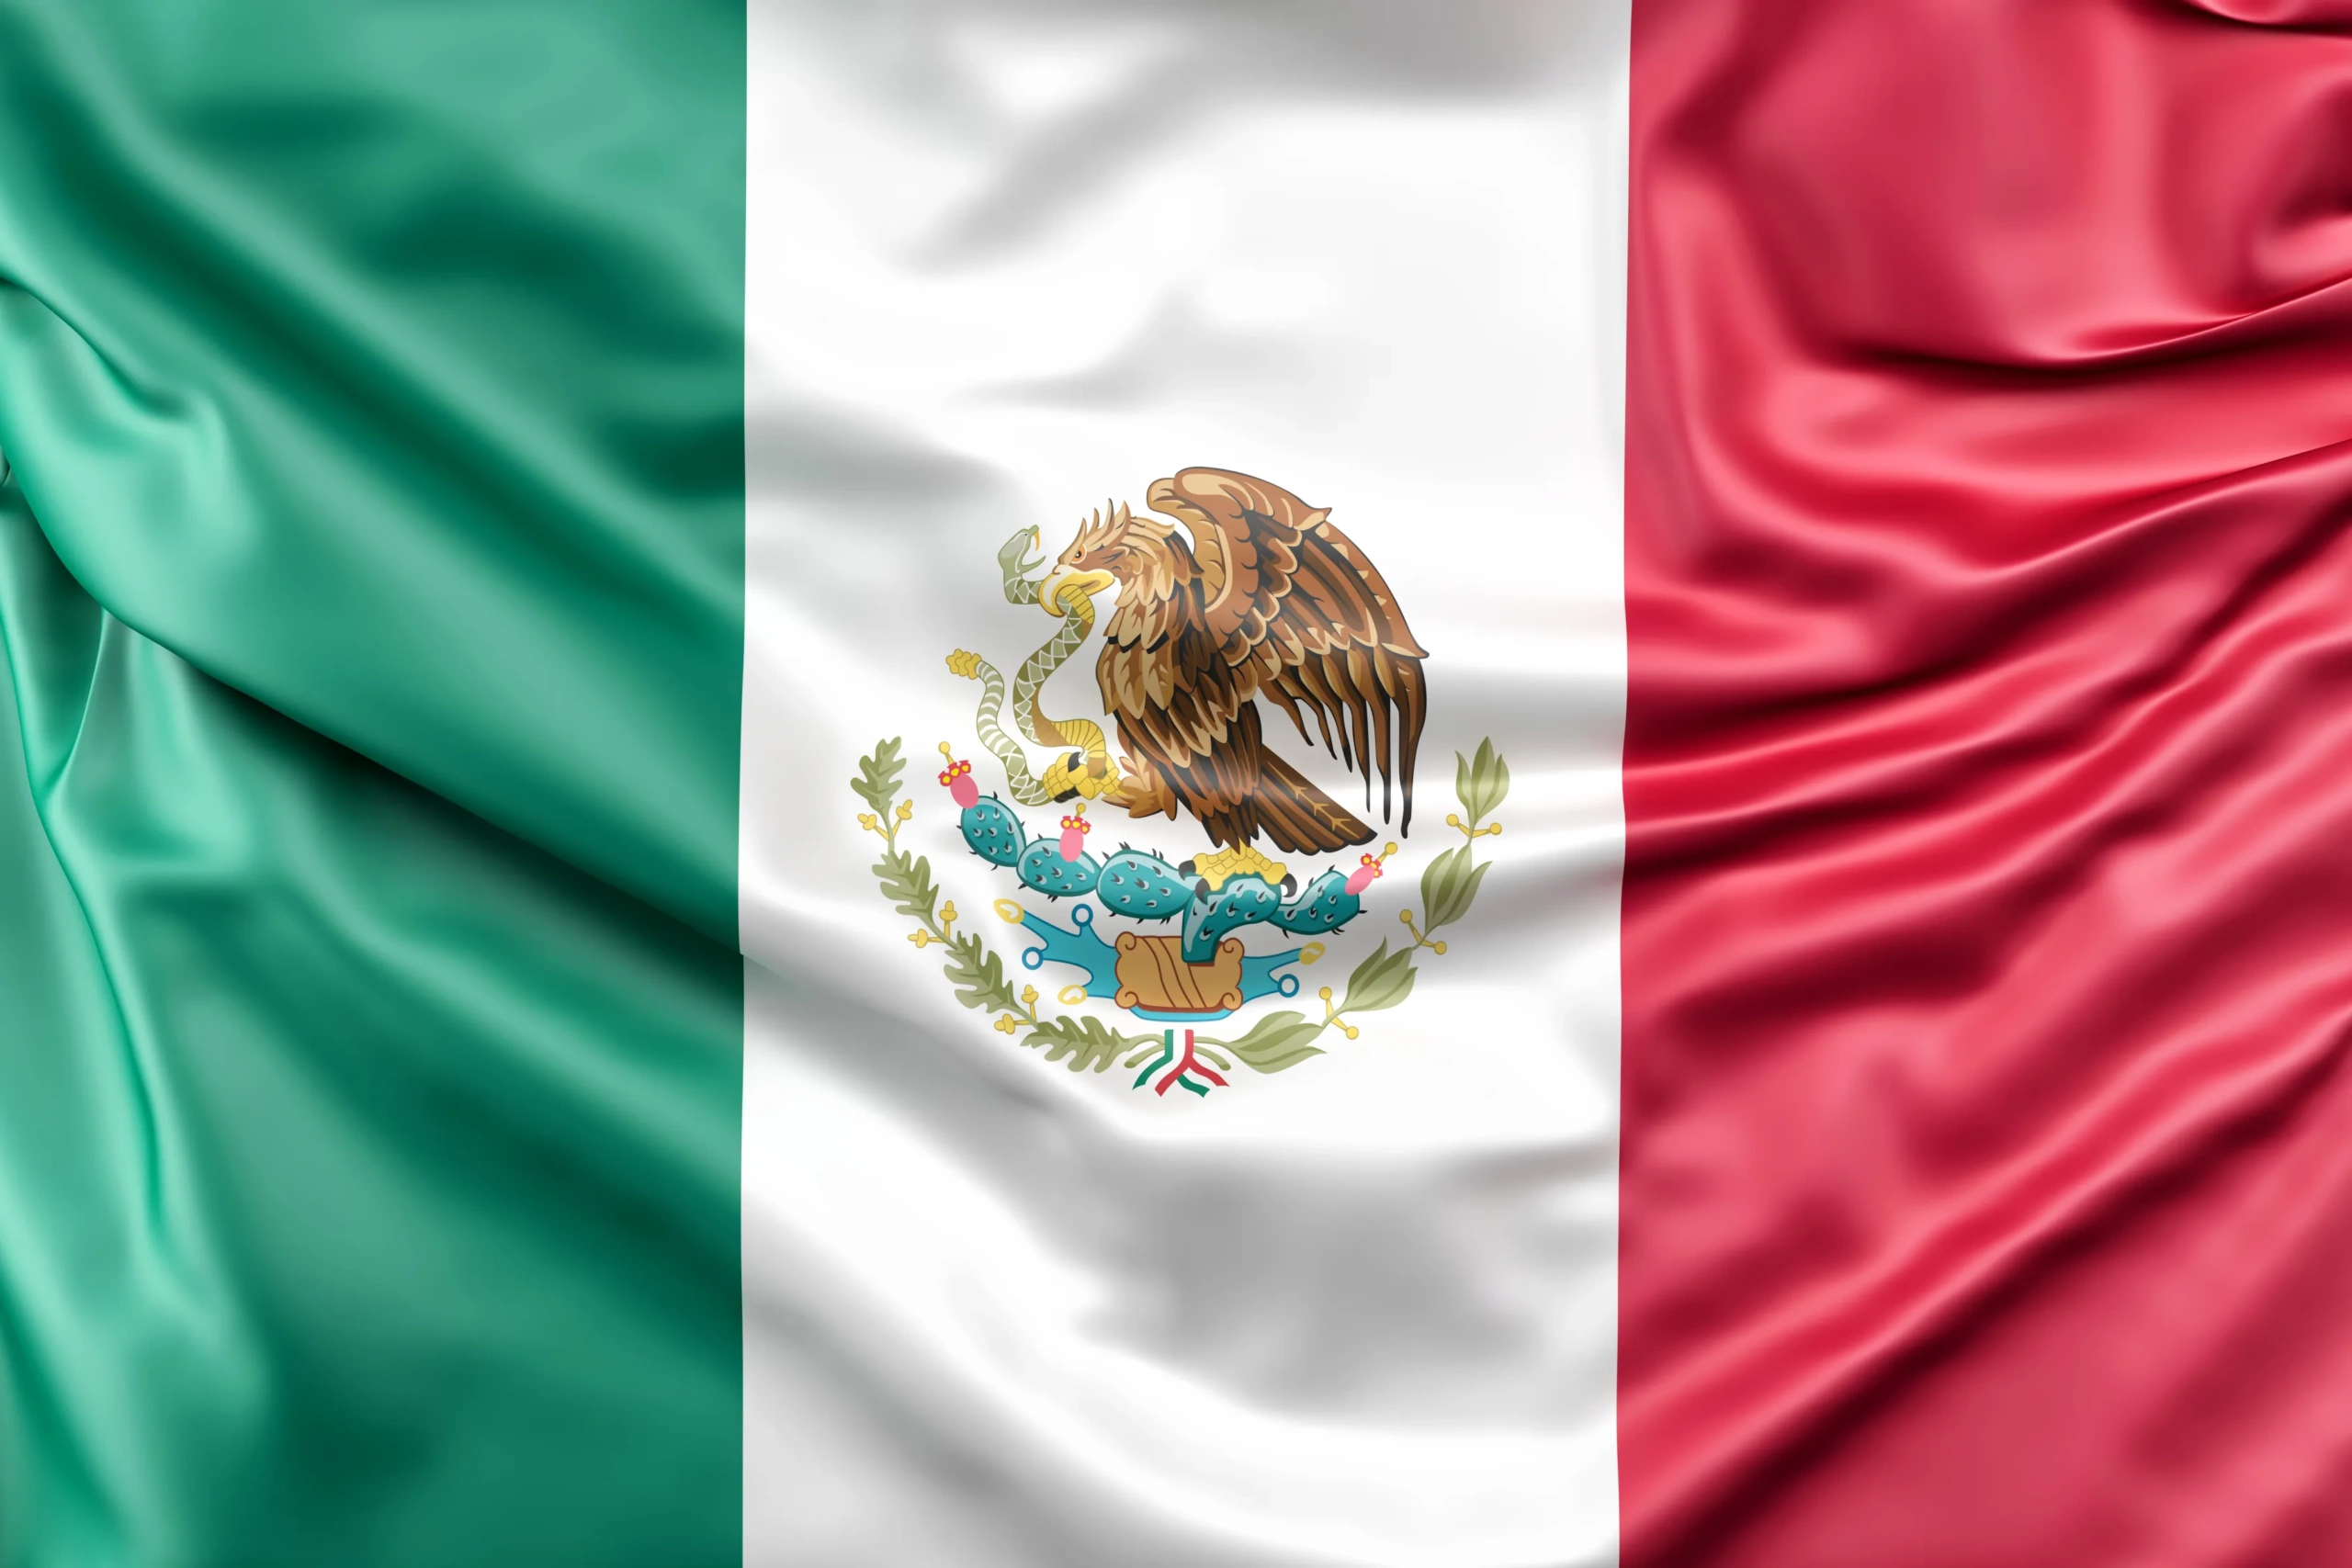 flag-mexico